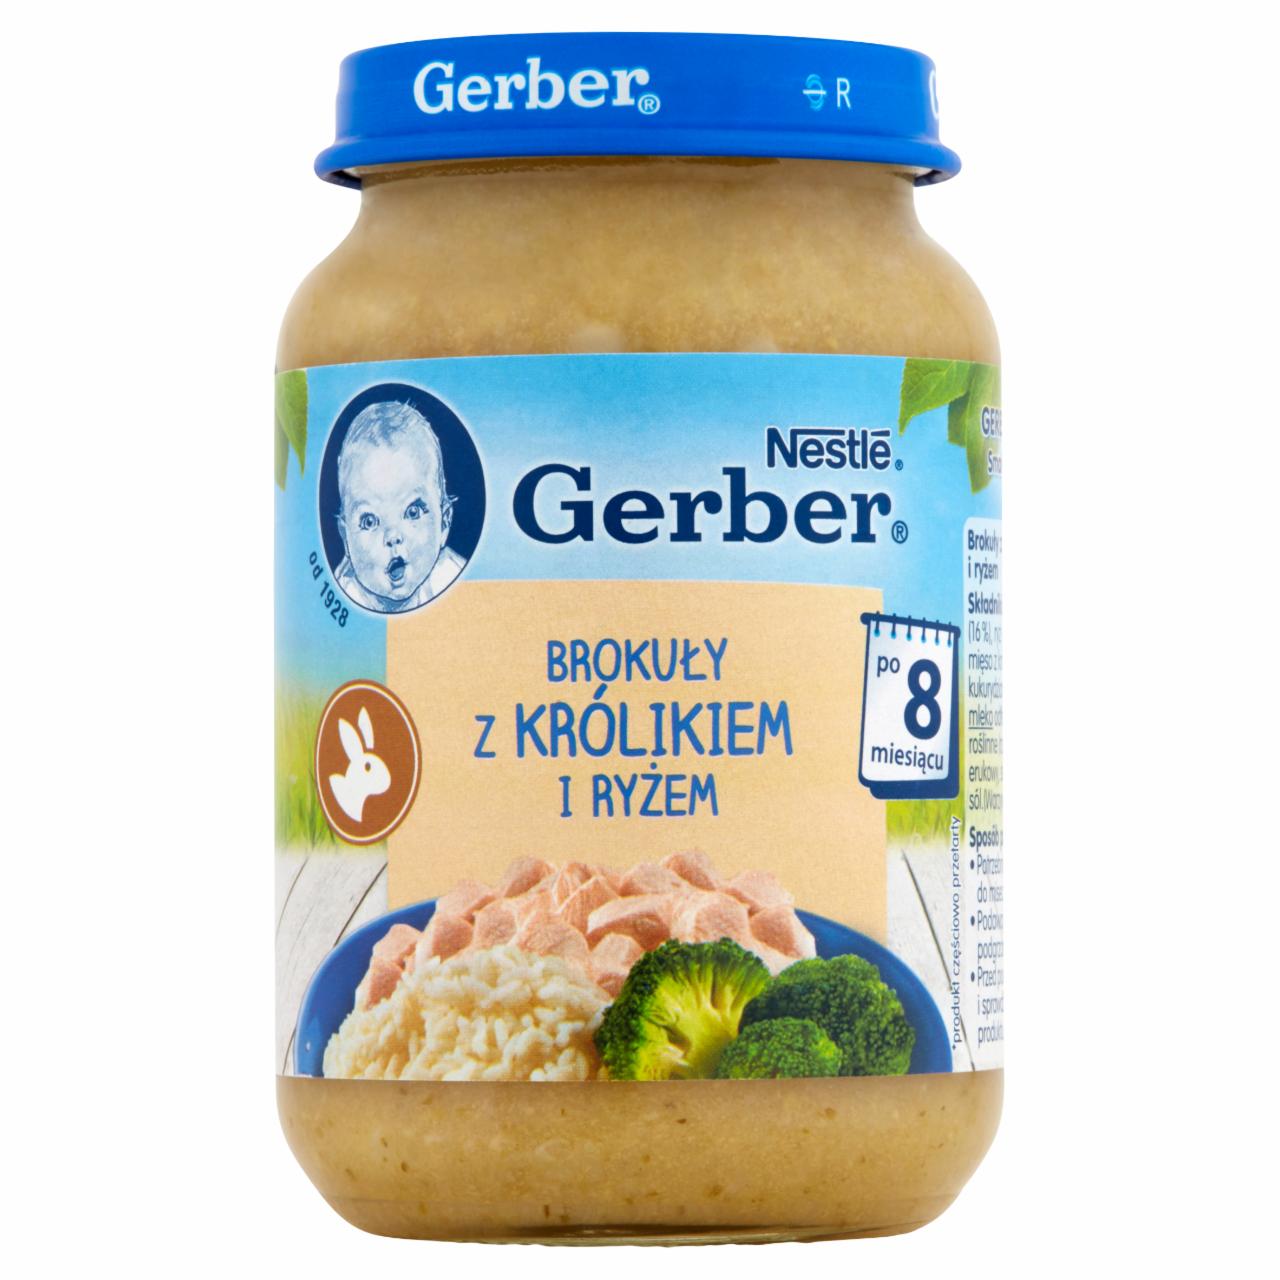 Zdjęcia - Gerber Brokuły z królikiem i ryżem po 8 miesiącu 190 g